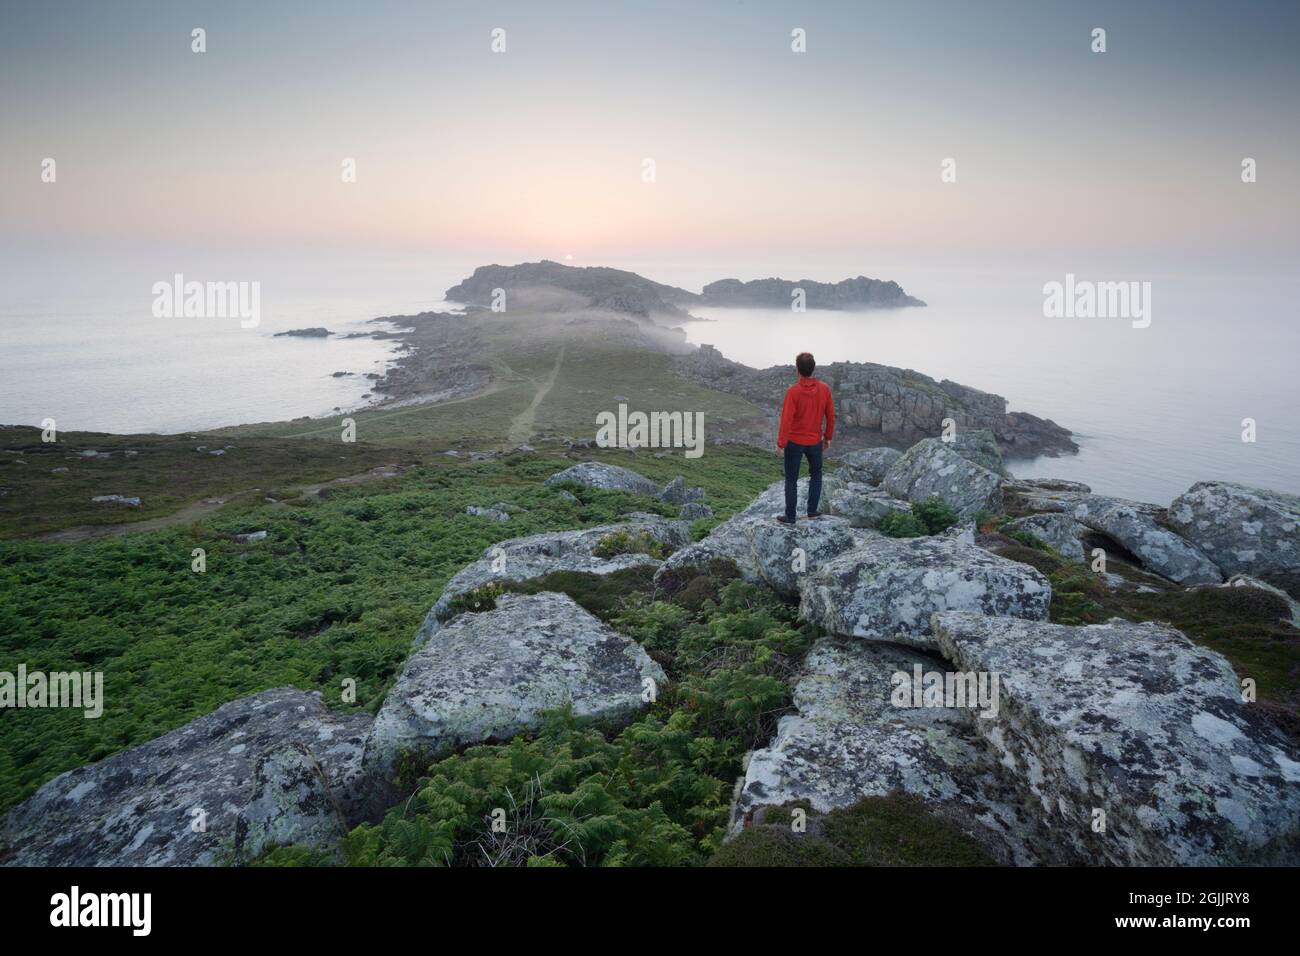 Hombre viendo la puesta de sol en Shipman Head. Bryher, Islas de Scilly. Cornwall, Reino Unido. Foto de stock